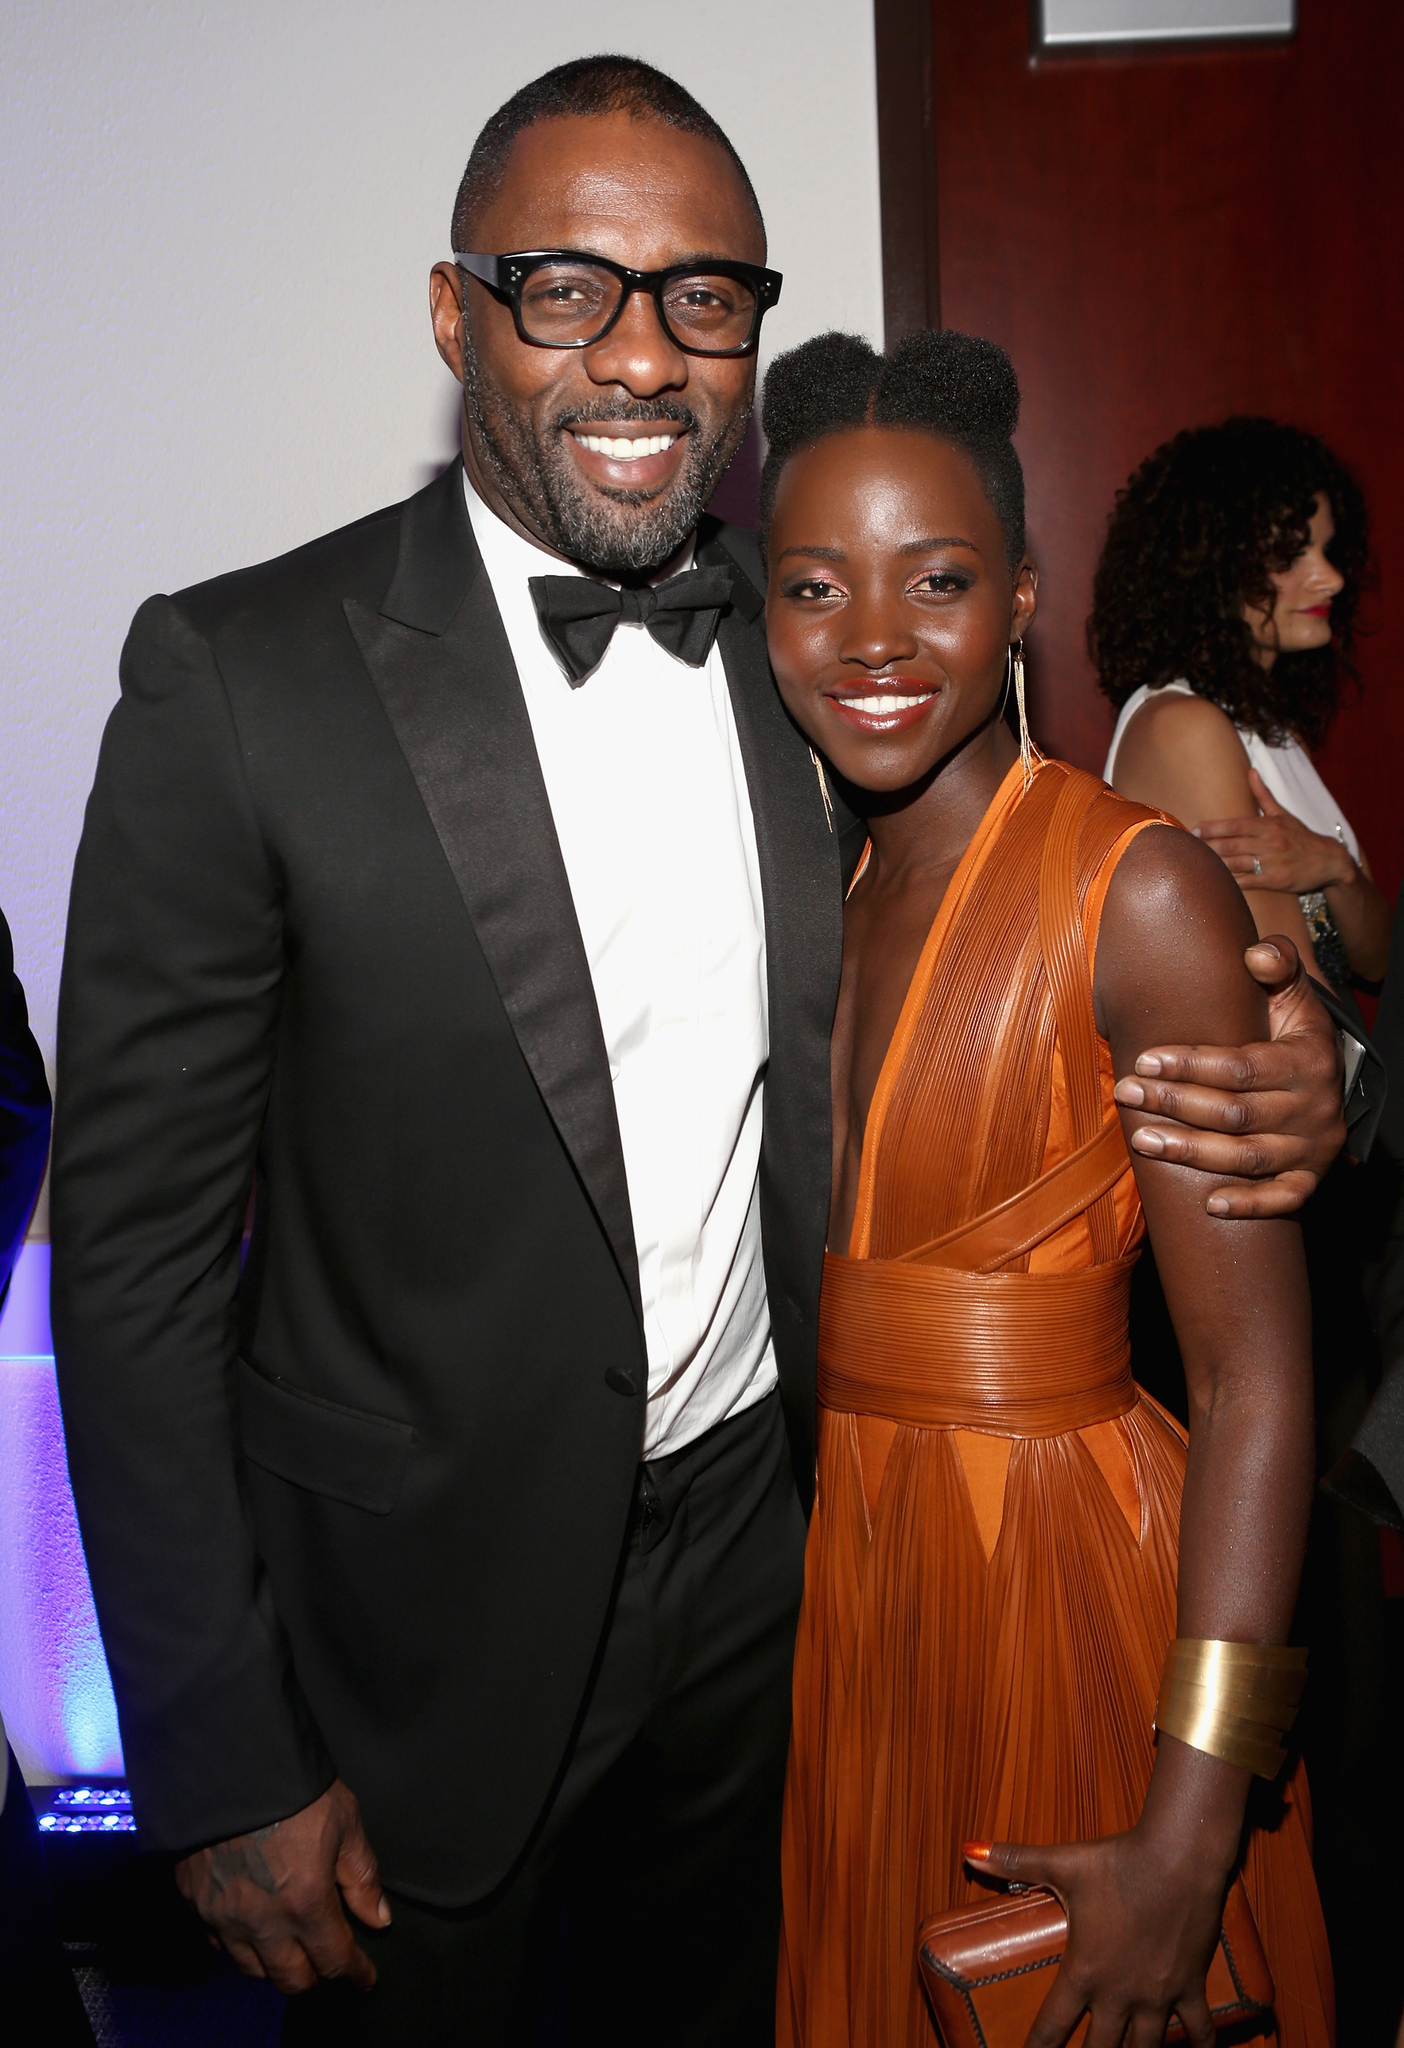 Idris Elba and Lupita Nyong'o